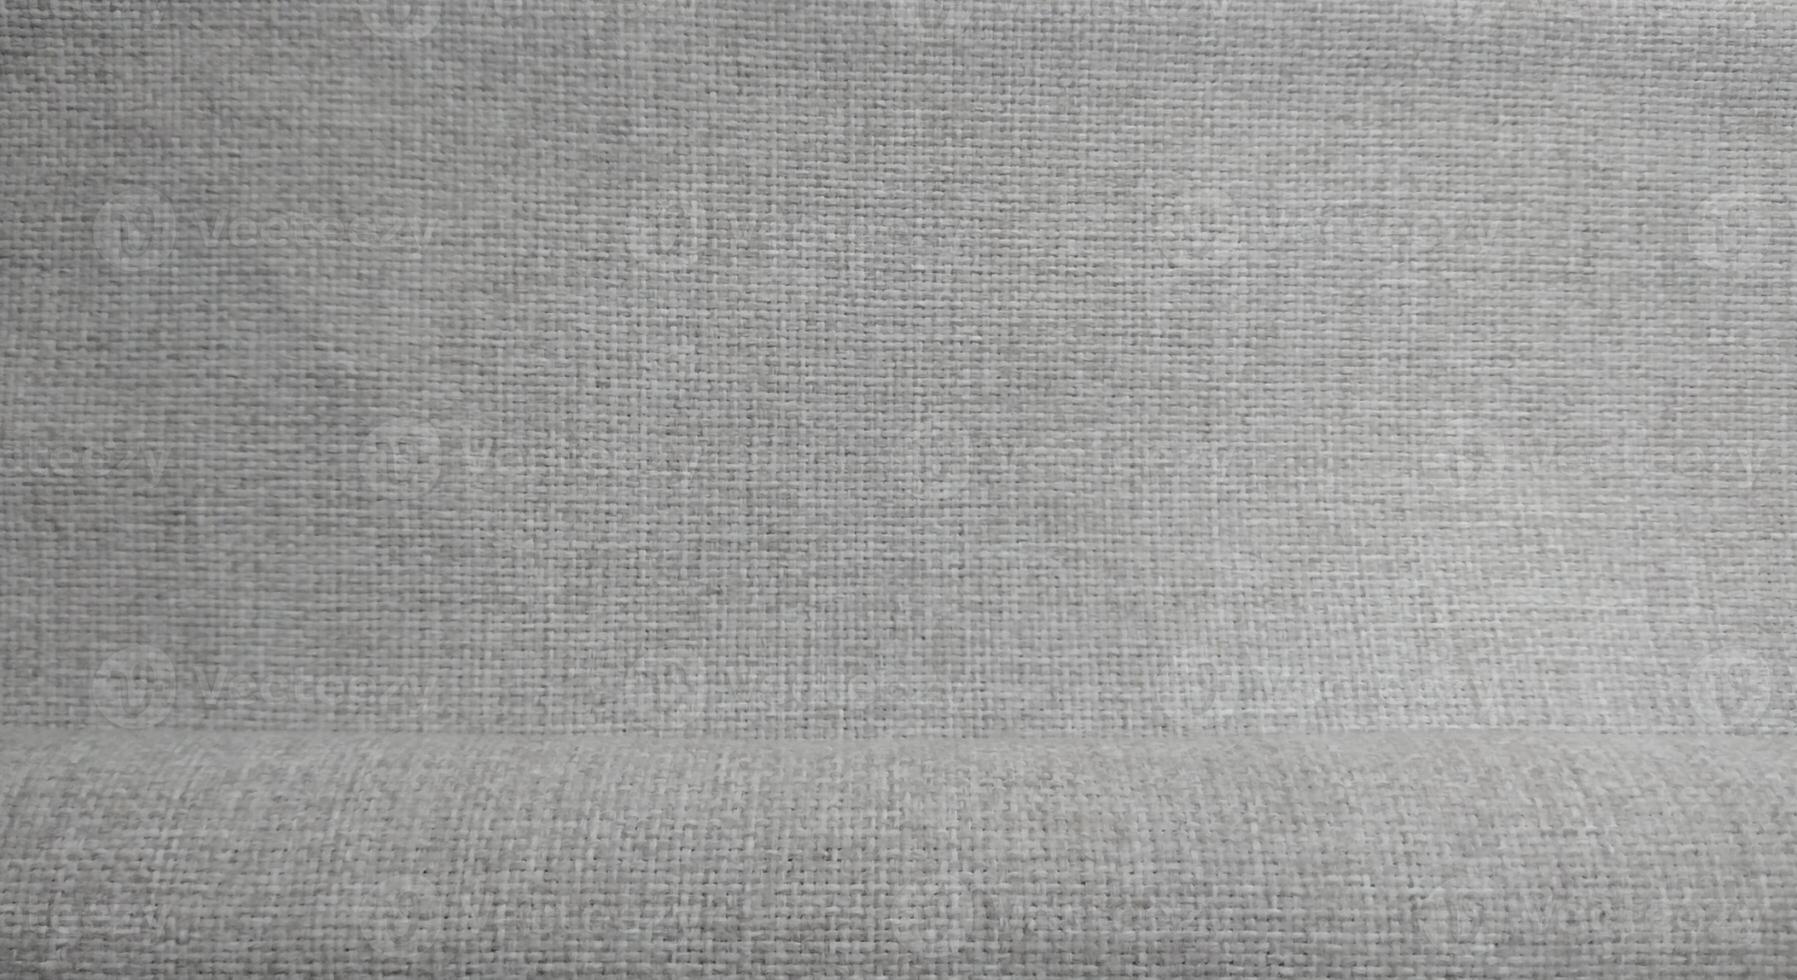 Linen fabric texture background. Linen fabric texture. Linen fabric background photo